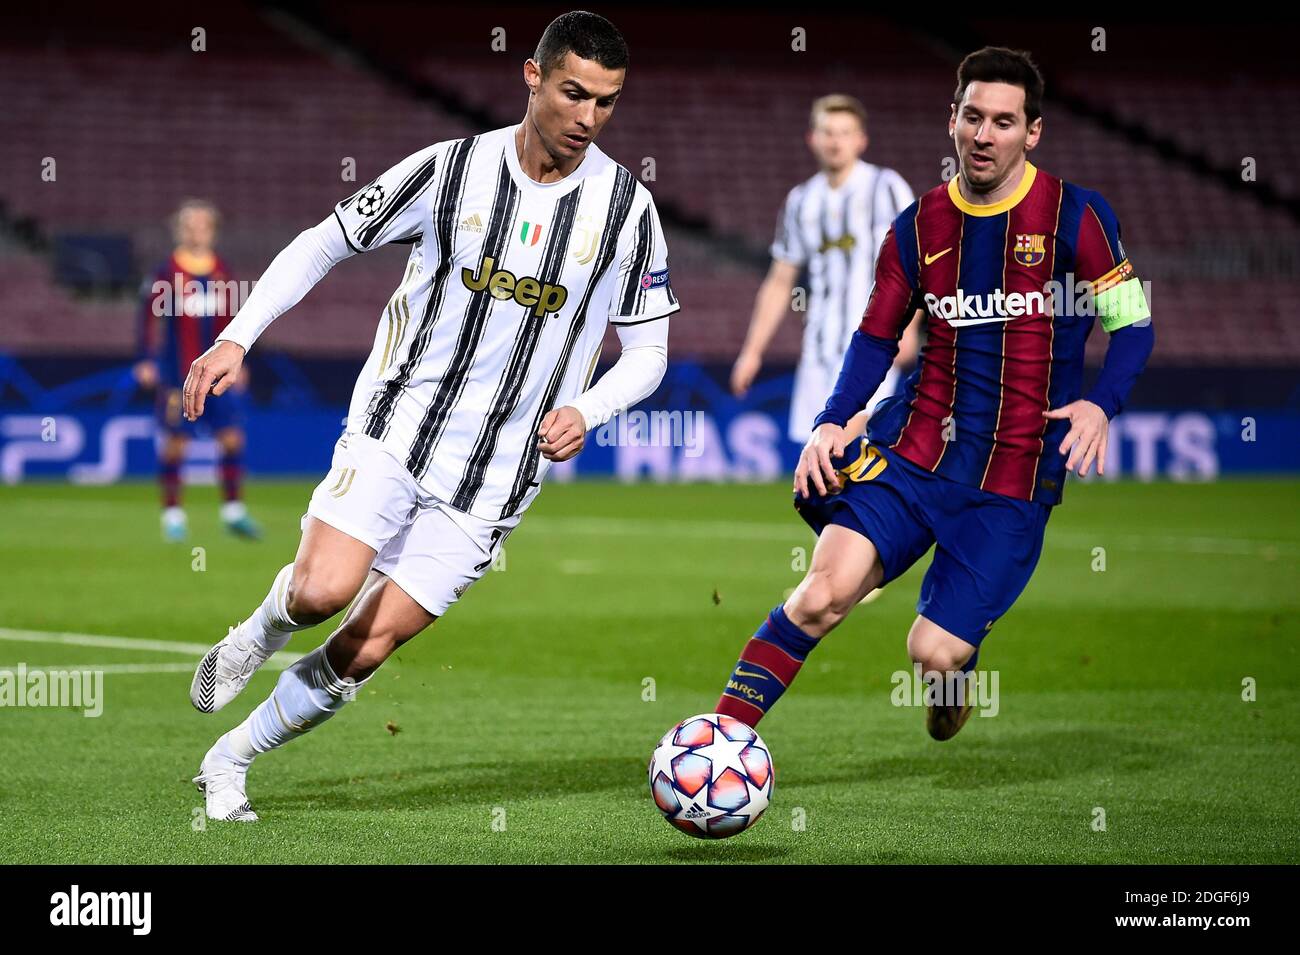 Uefa, dalla Spagna: progetto 'All Star Game' con Messi e Ronaldo insieme »  LaRoma24